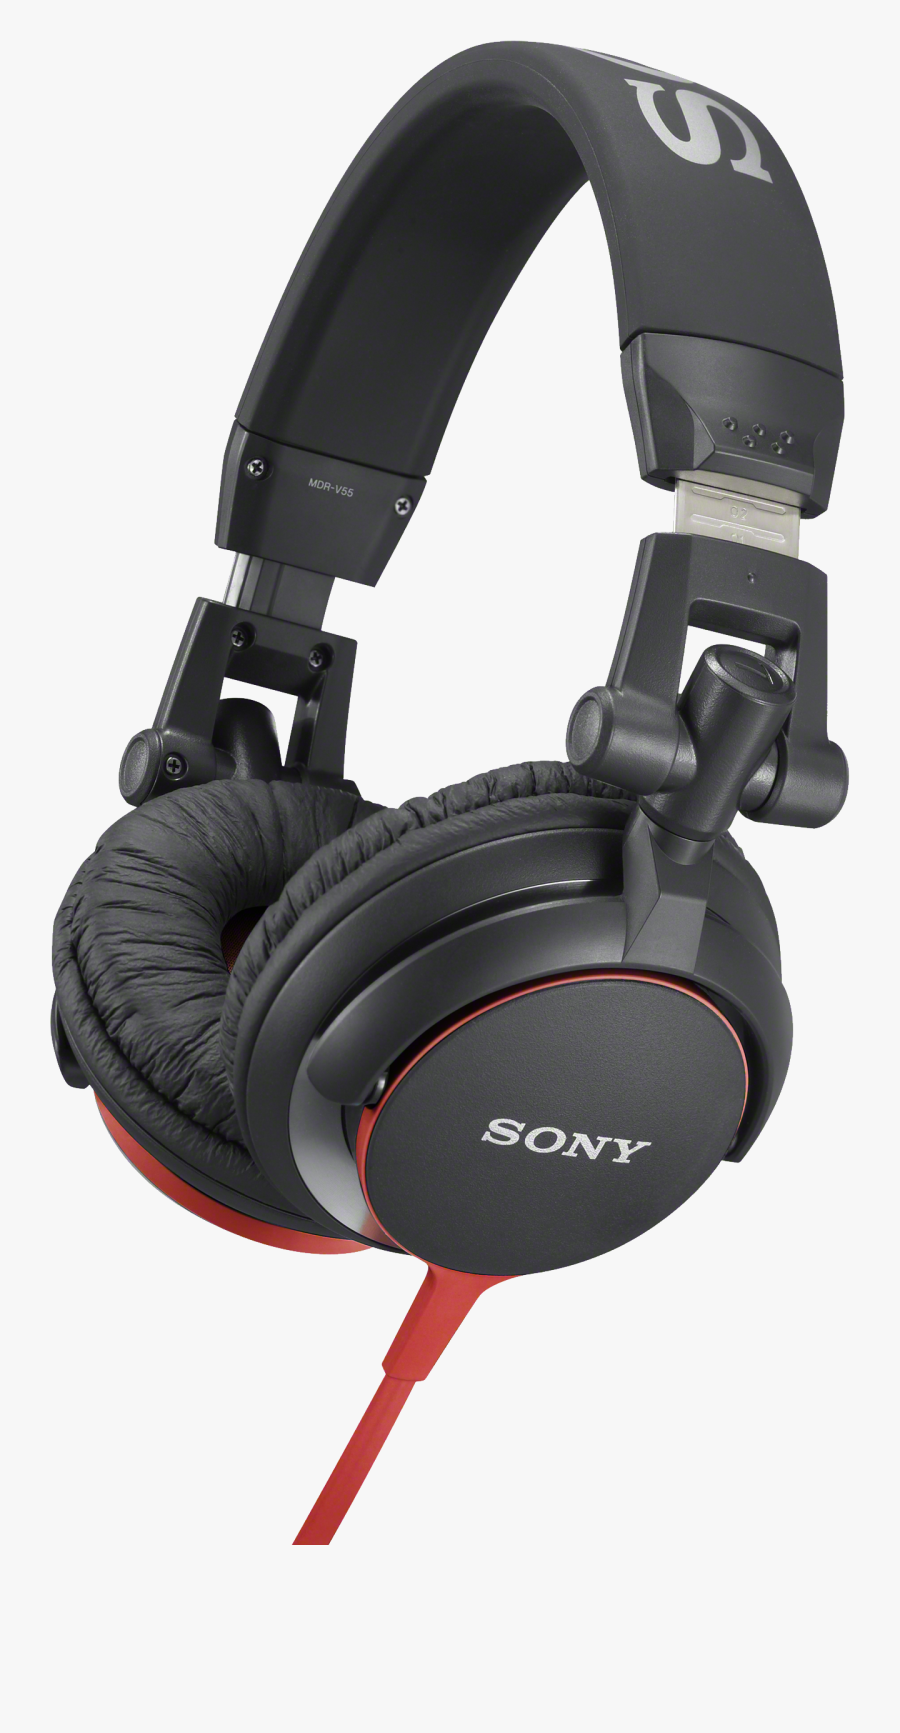 Headphones Png Image - Sony Mdr V55, Transparent Clipart